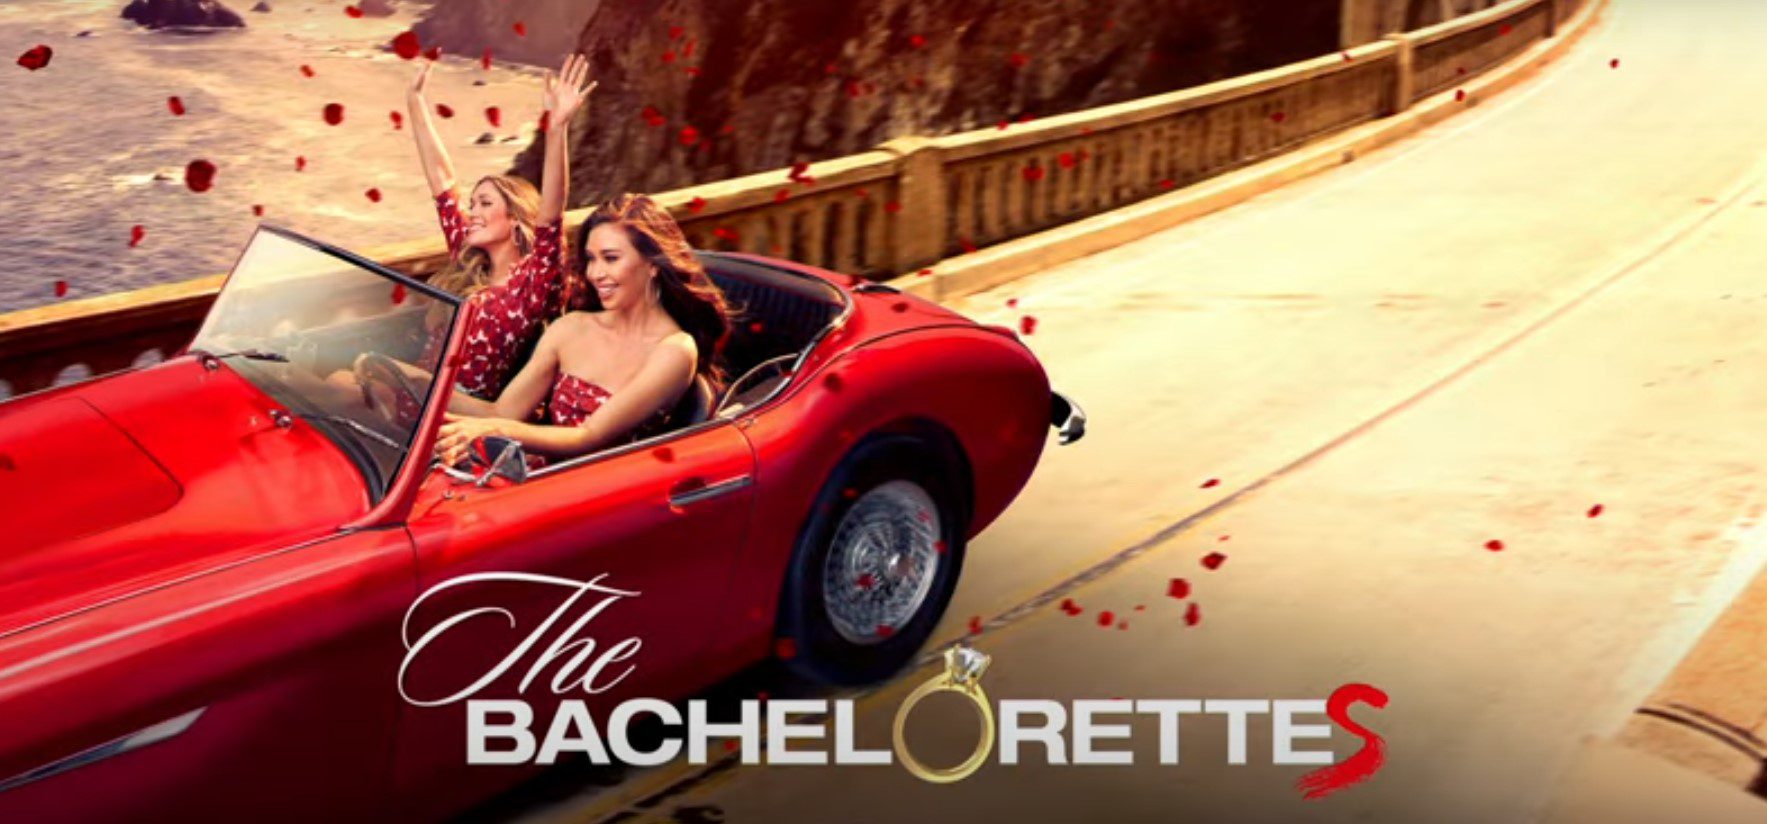 The Bachelorette Season 19 Episode 2